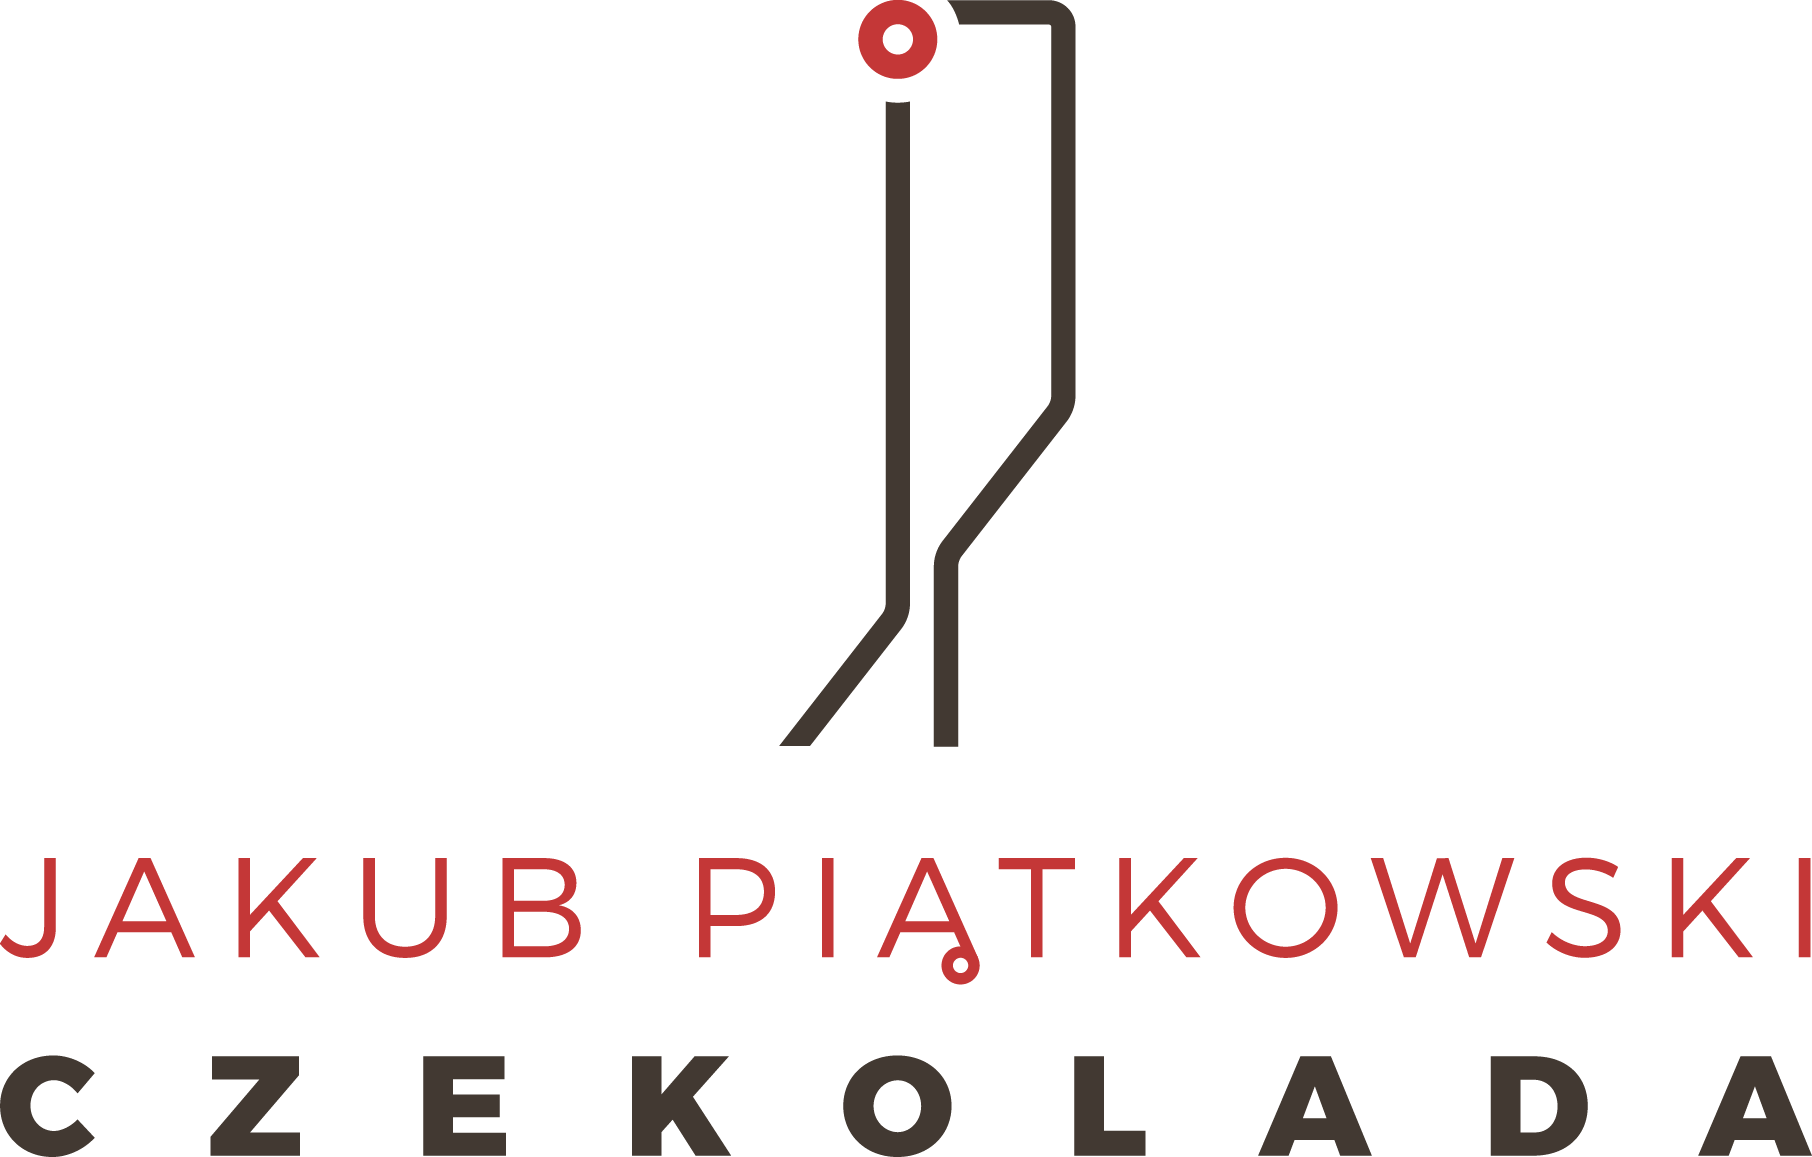 Jakub Piątkowski Czekolada